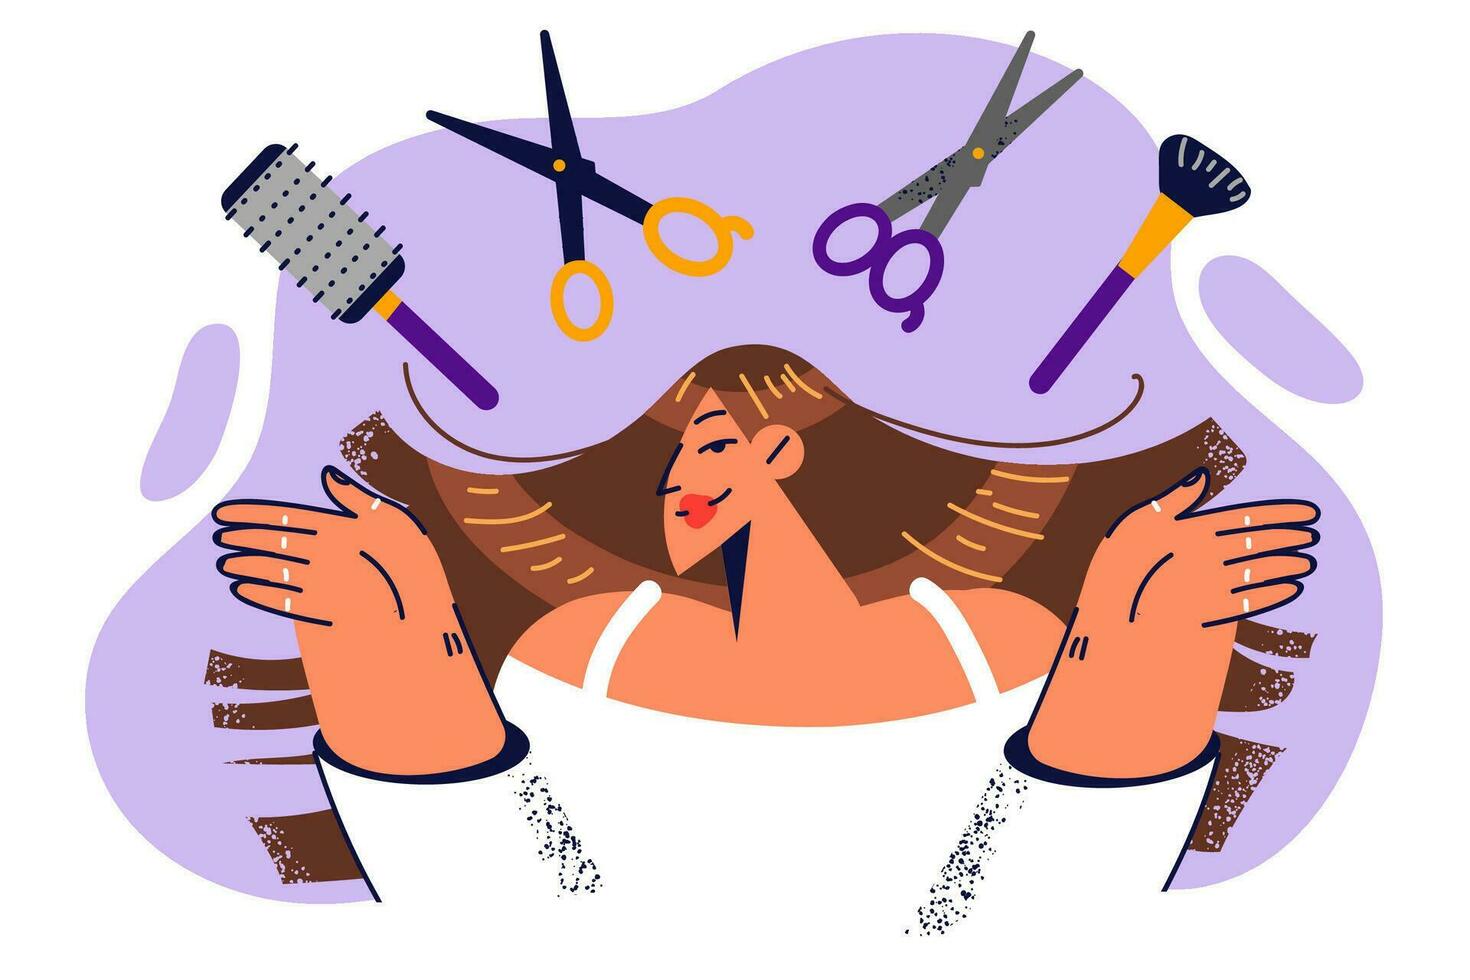 Frau Friseur mit Werkzeuge zu Arbeit auf schön Frisur und erstellen Neu aussehen Vielen Dank zu Haarschnitte. Mädchen steht in der Nähe von Schere und Kamm Werbung Dienstleistungen von Friseur oder Schönheit Salon vektor